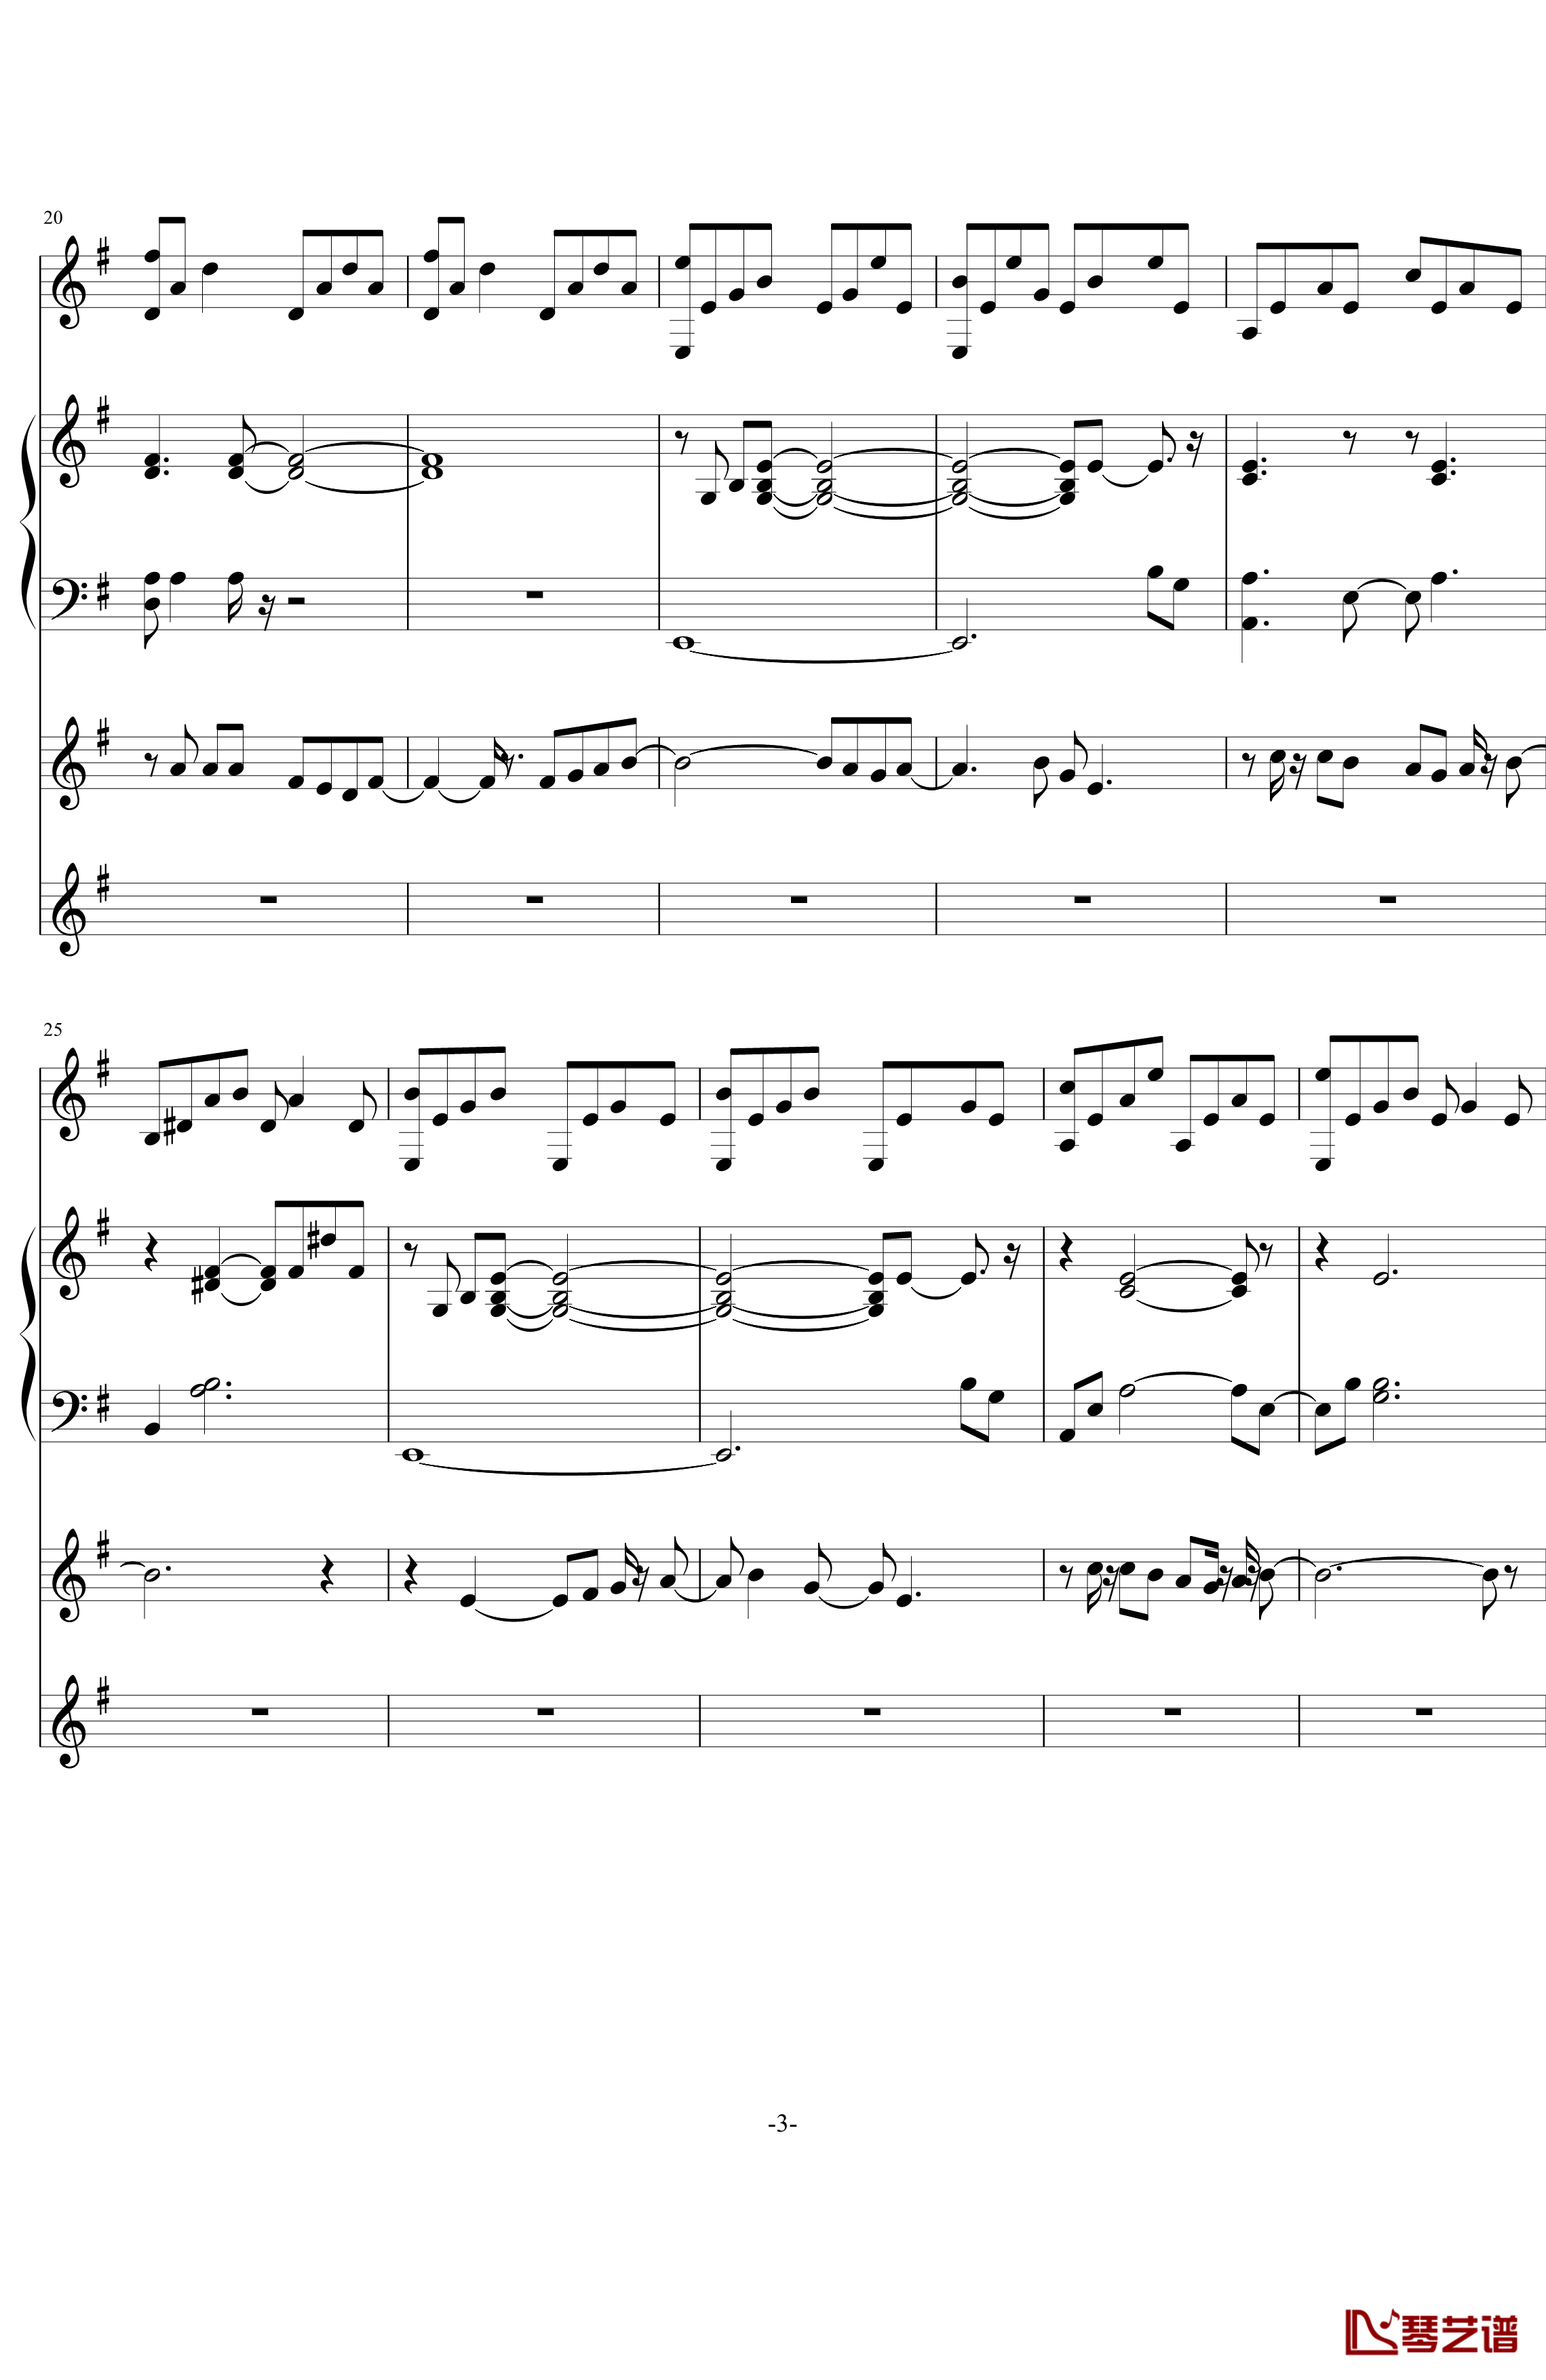 中提琴协奏版钢琴谱-含有钢琴独奏-老奠3